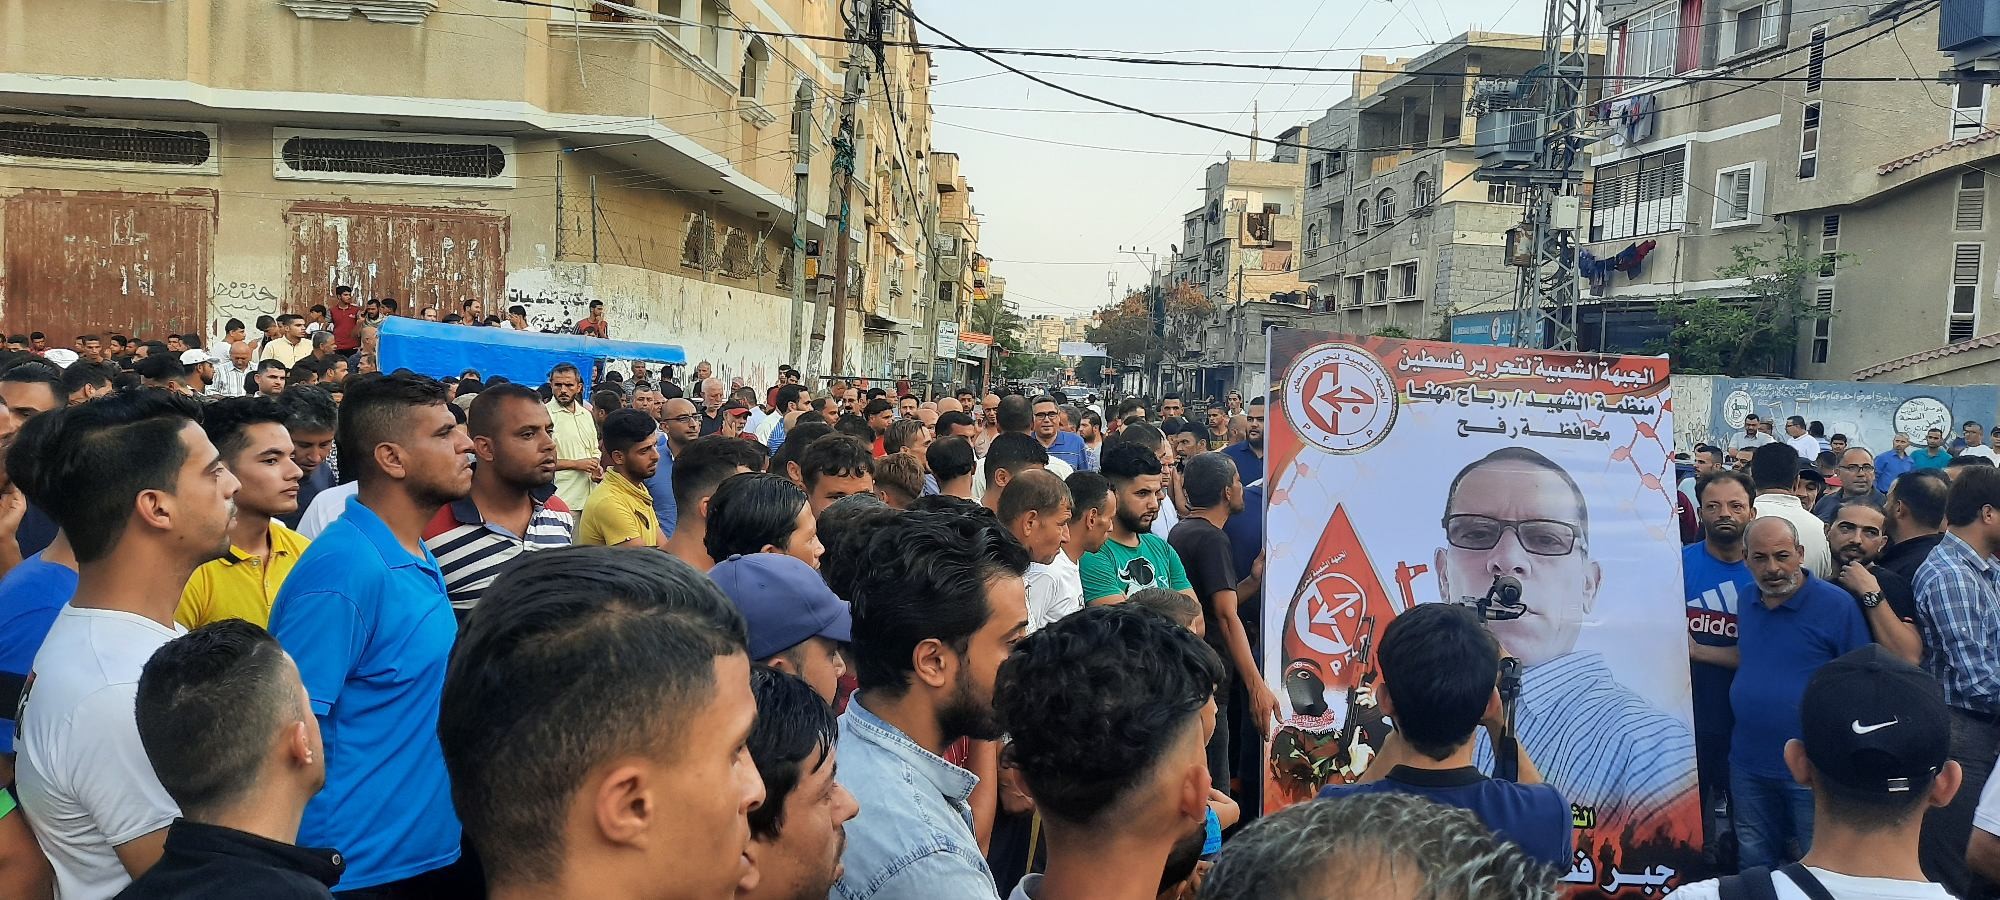 أهالي رفح يطالبون بتنفيذ القصاص على قتلة القيق